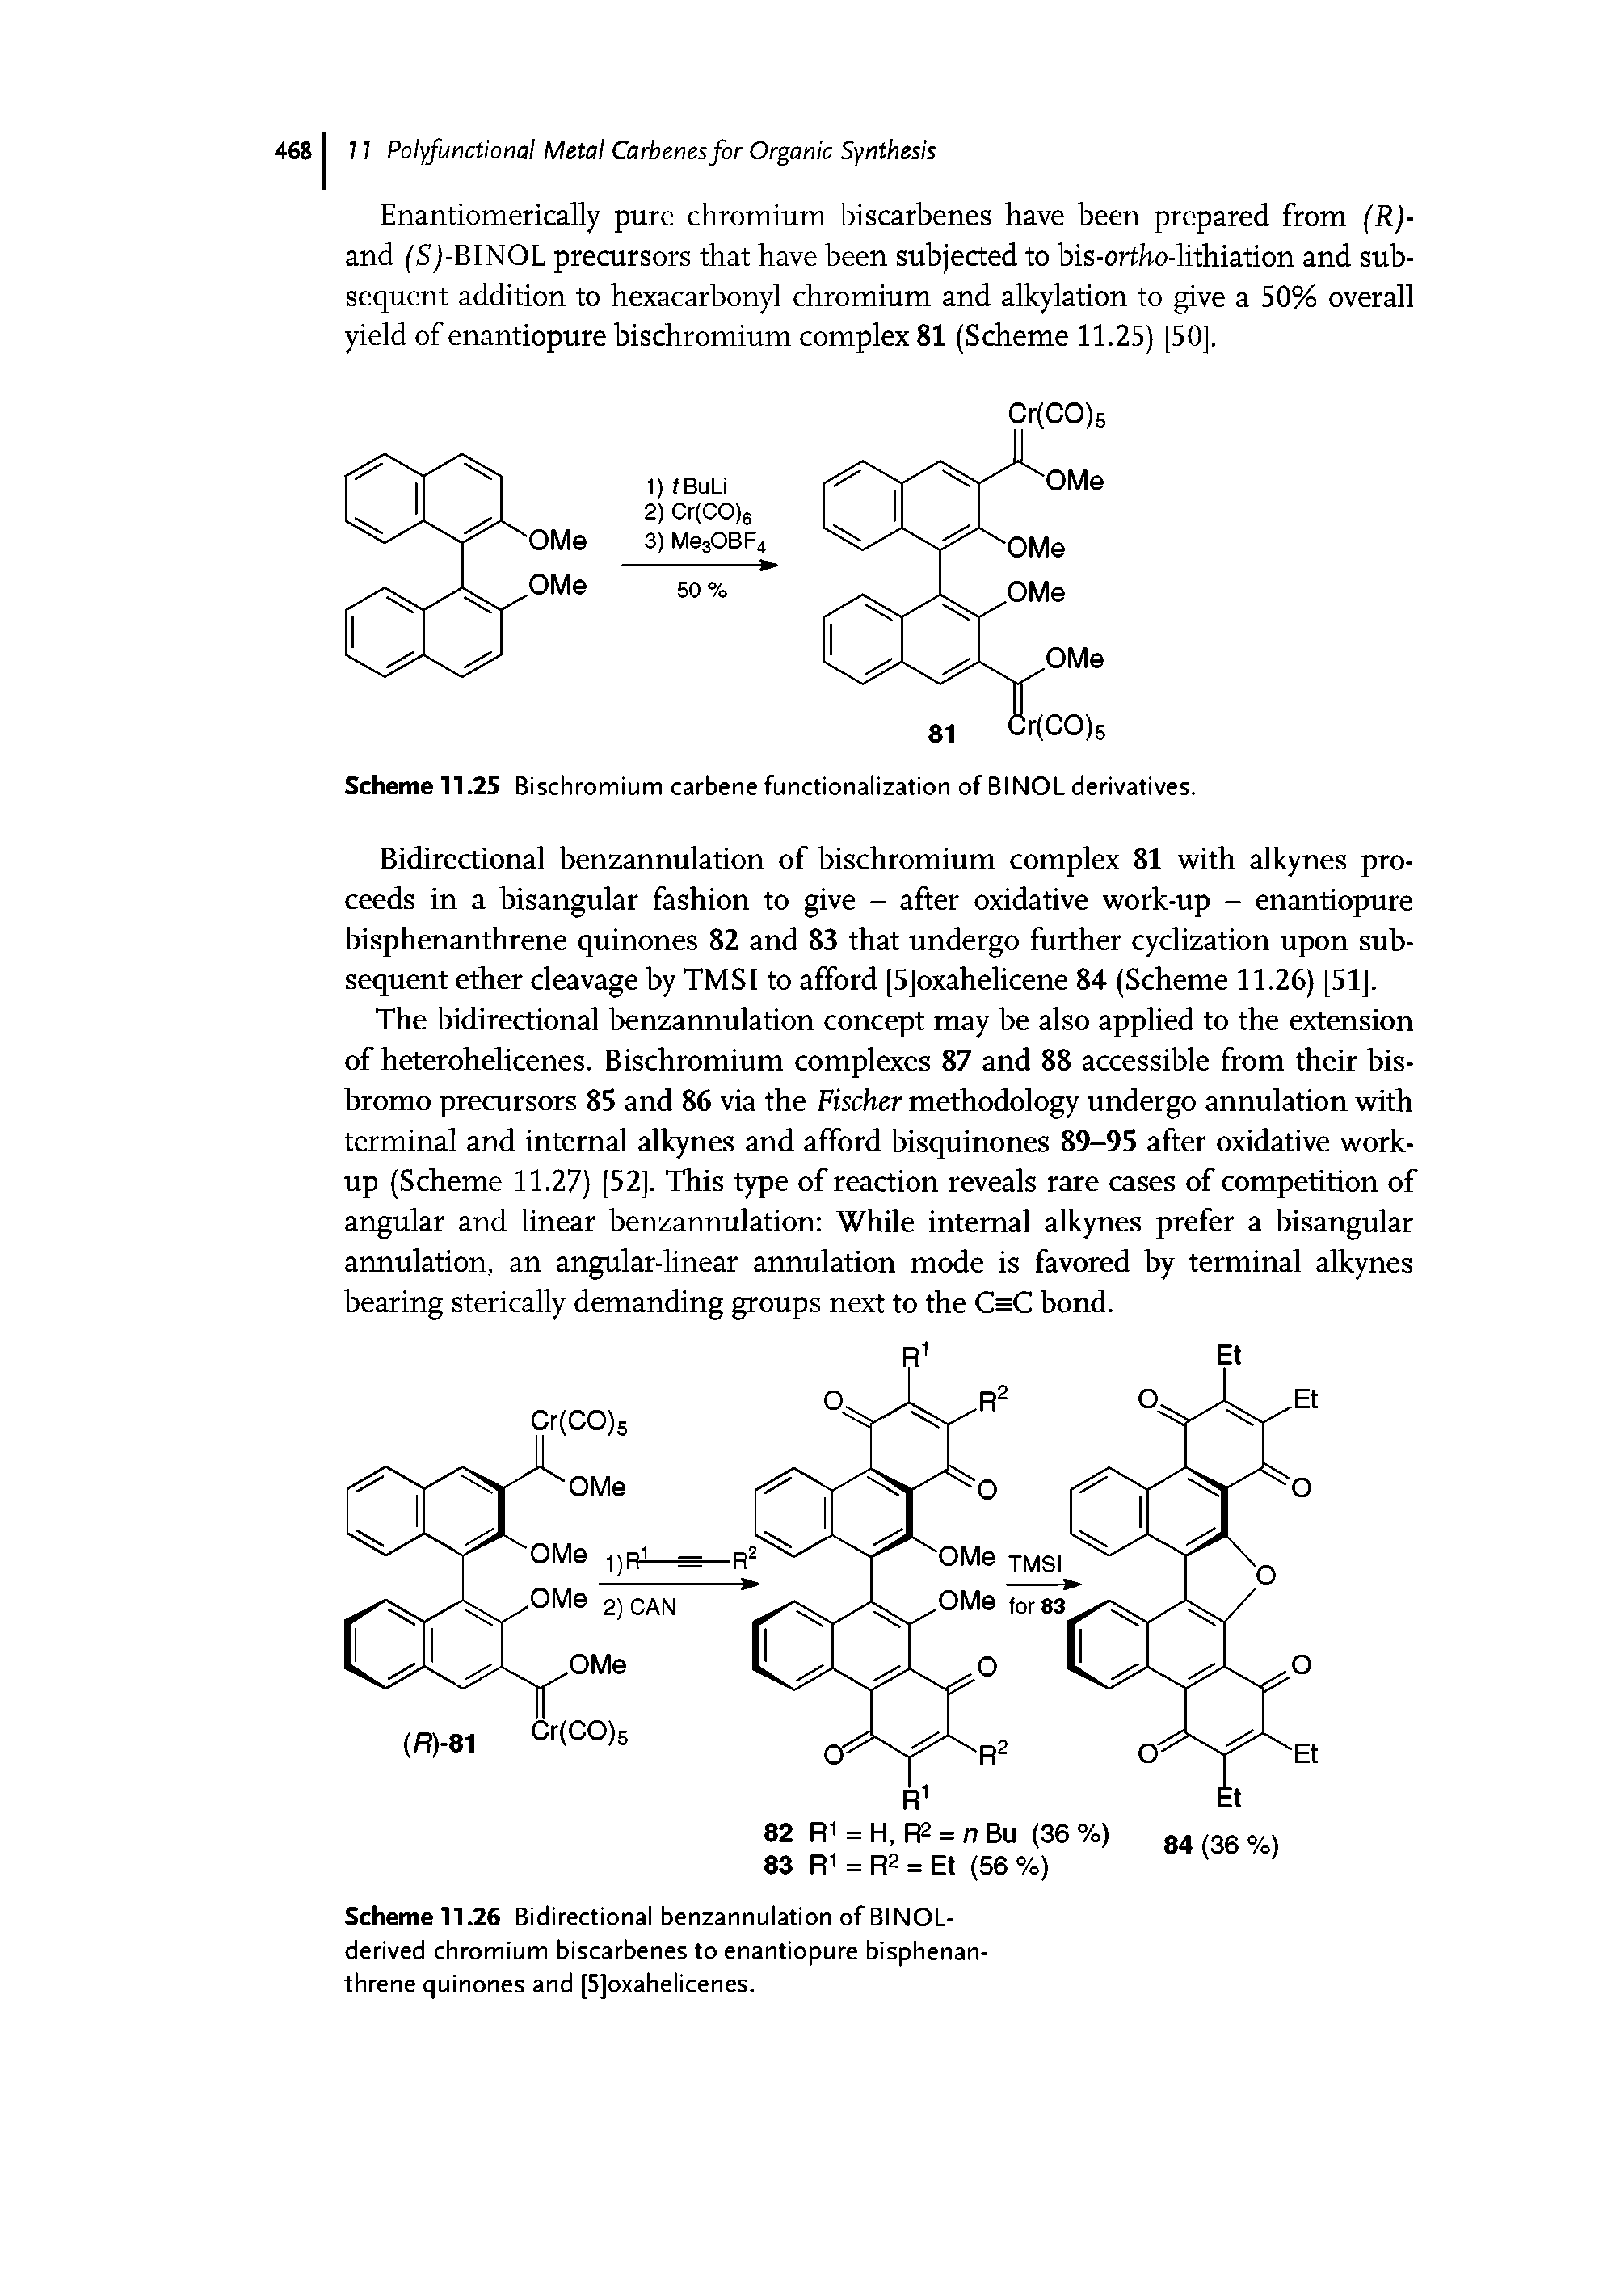 Scheme 11.26 Bidirectional benzannulation ofBINOL-derived chromium biscarbenes to enantiopure bisphenanthrene quinones and [Sjoxahelicenes.